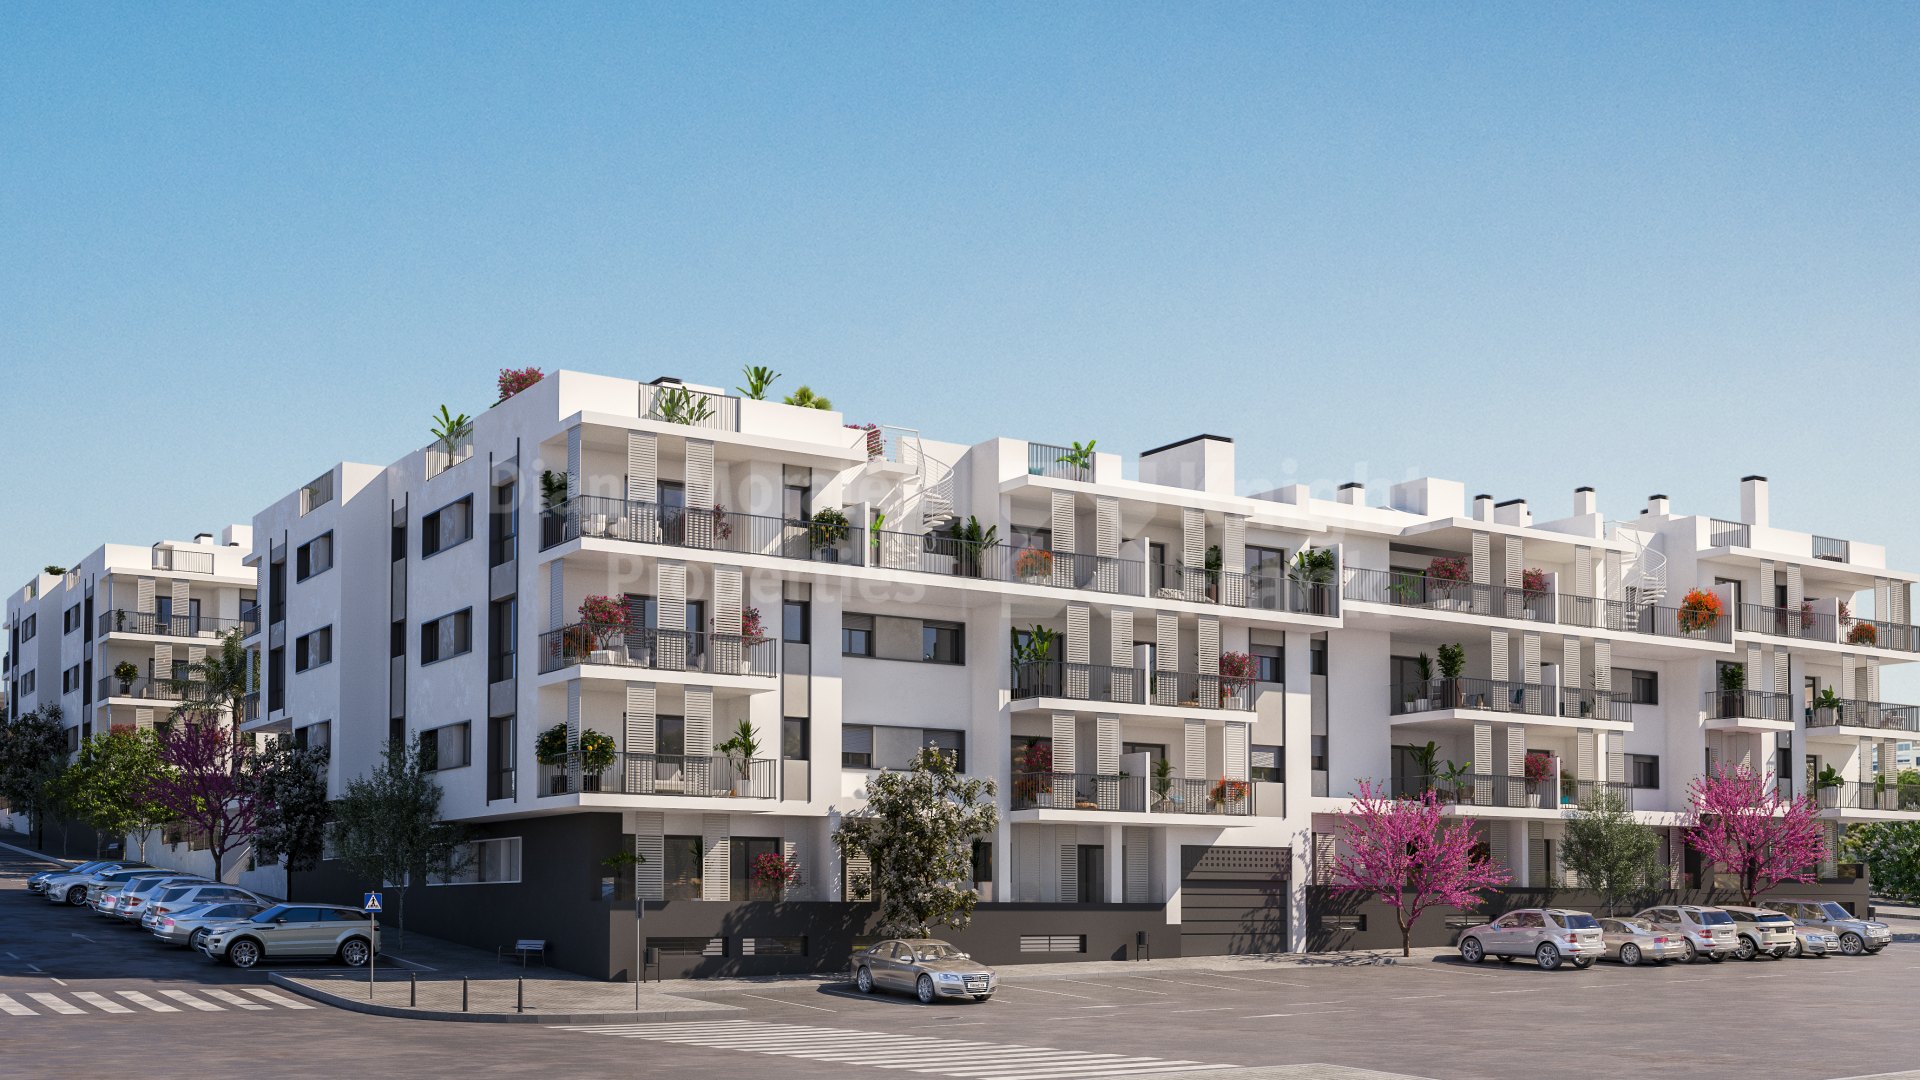 Isidora Living, a new apartment complex 5 minutes walk to Estepona beach